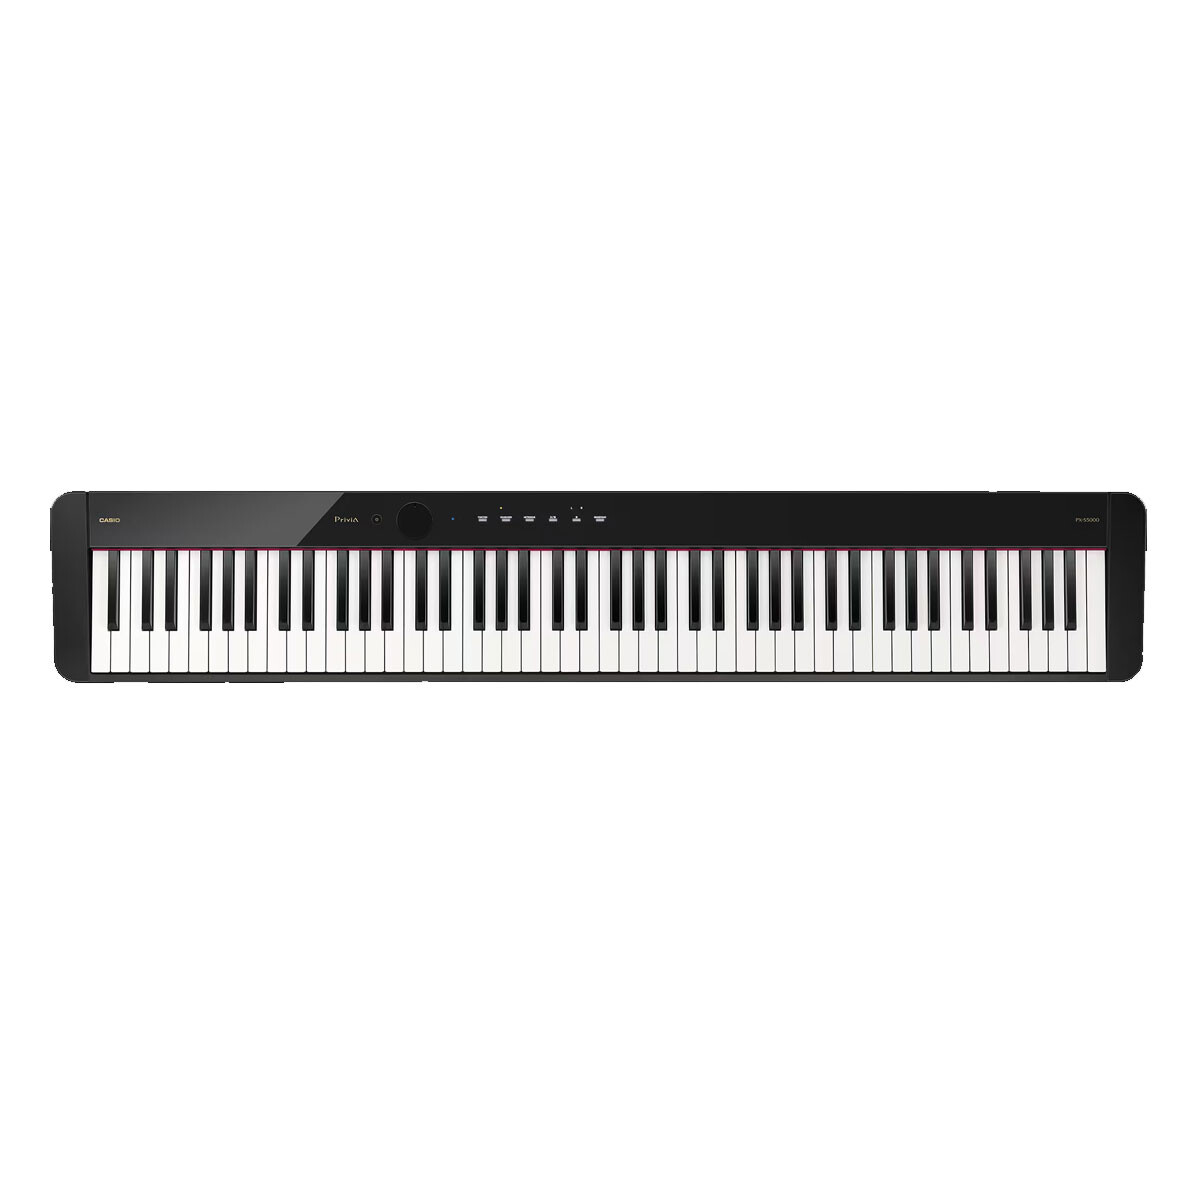 Piano Digital Casio Pxs5000 Black 